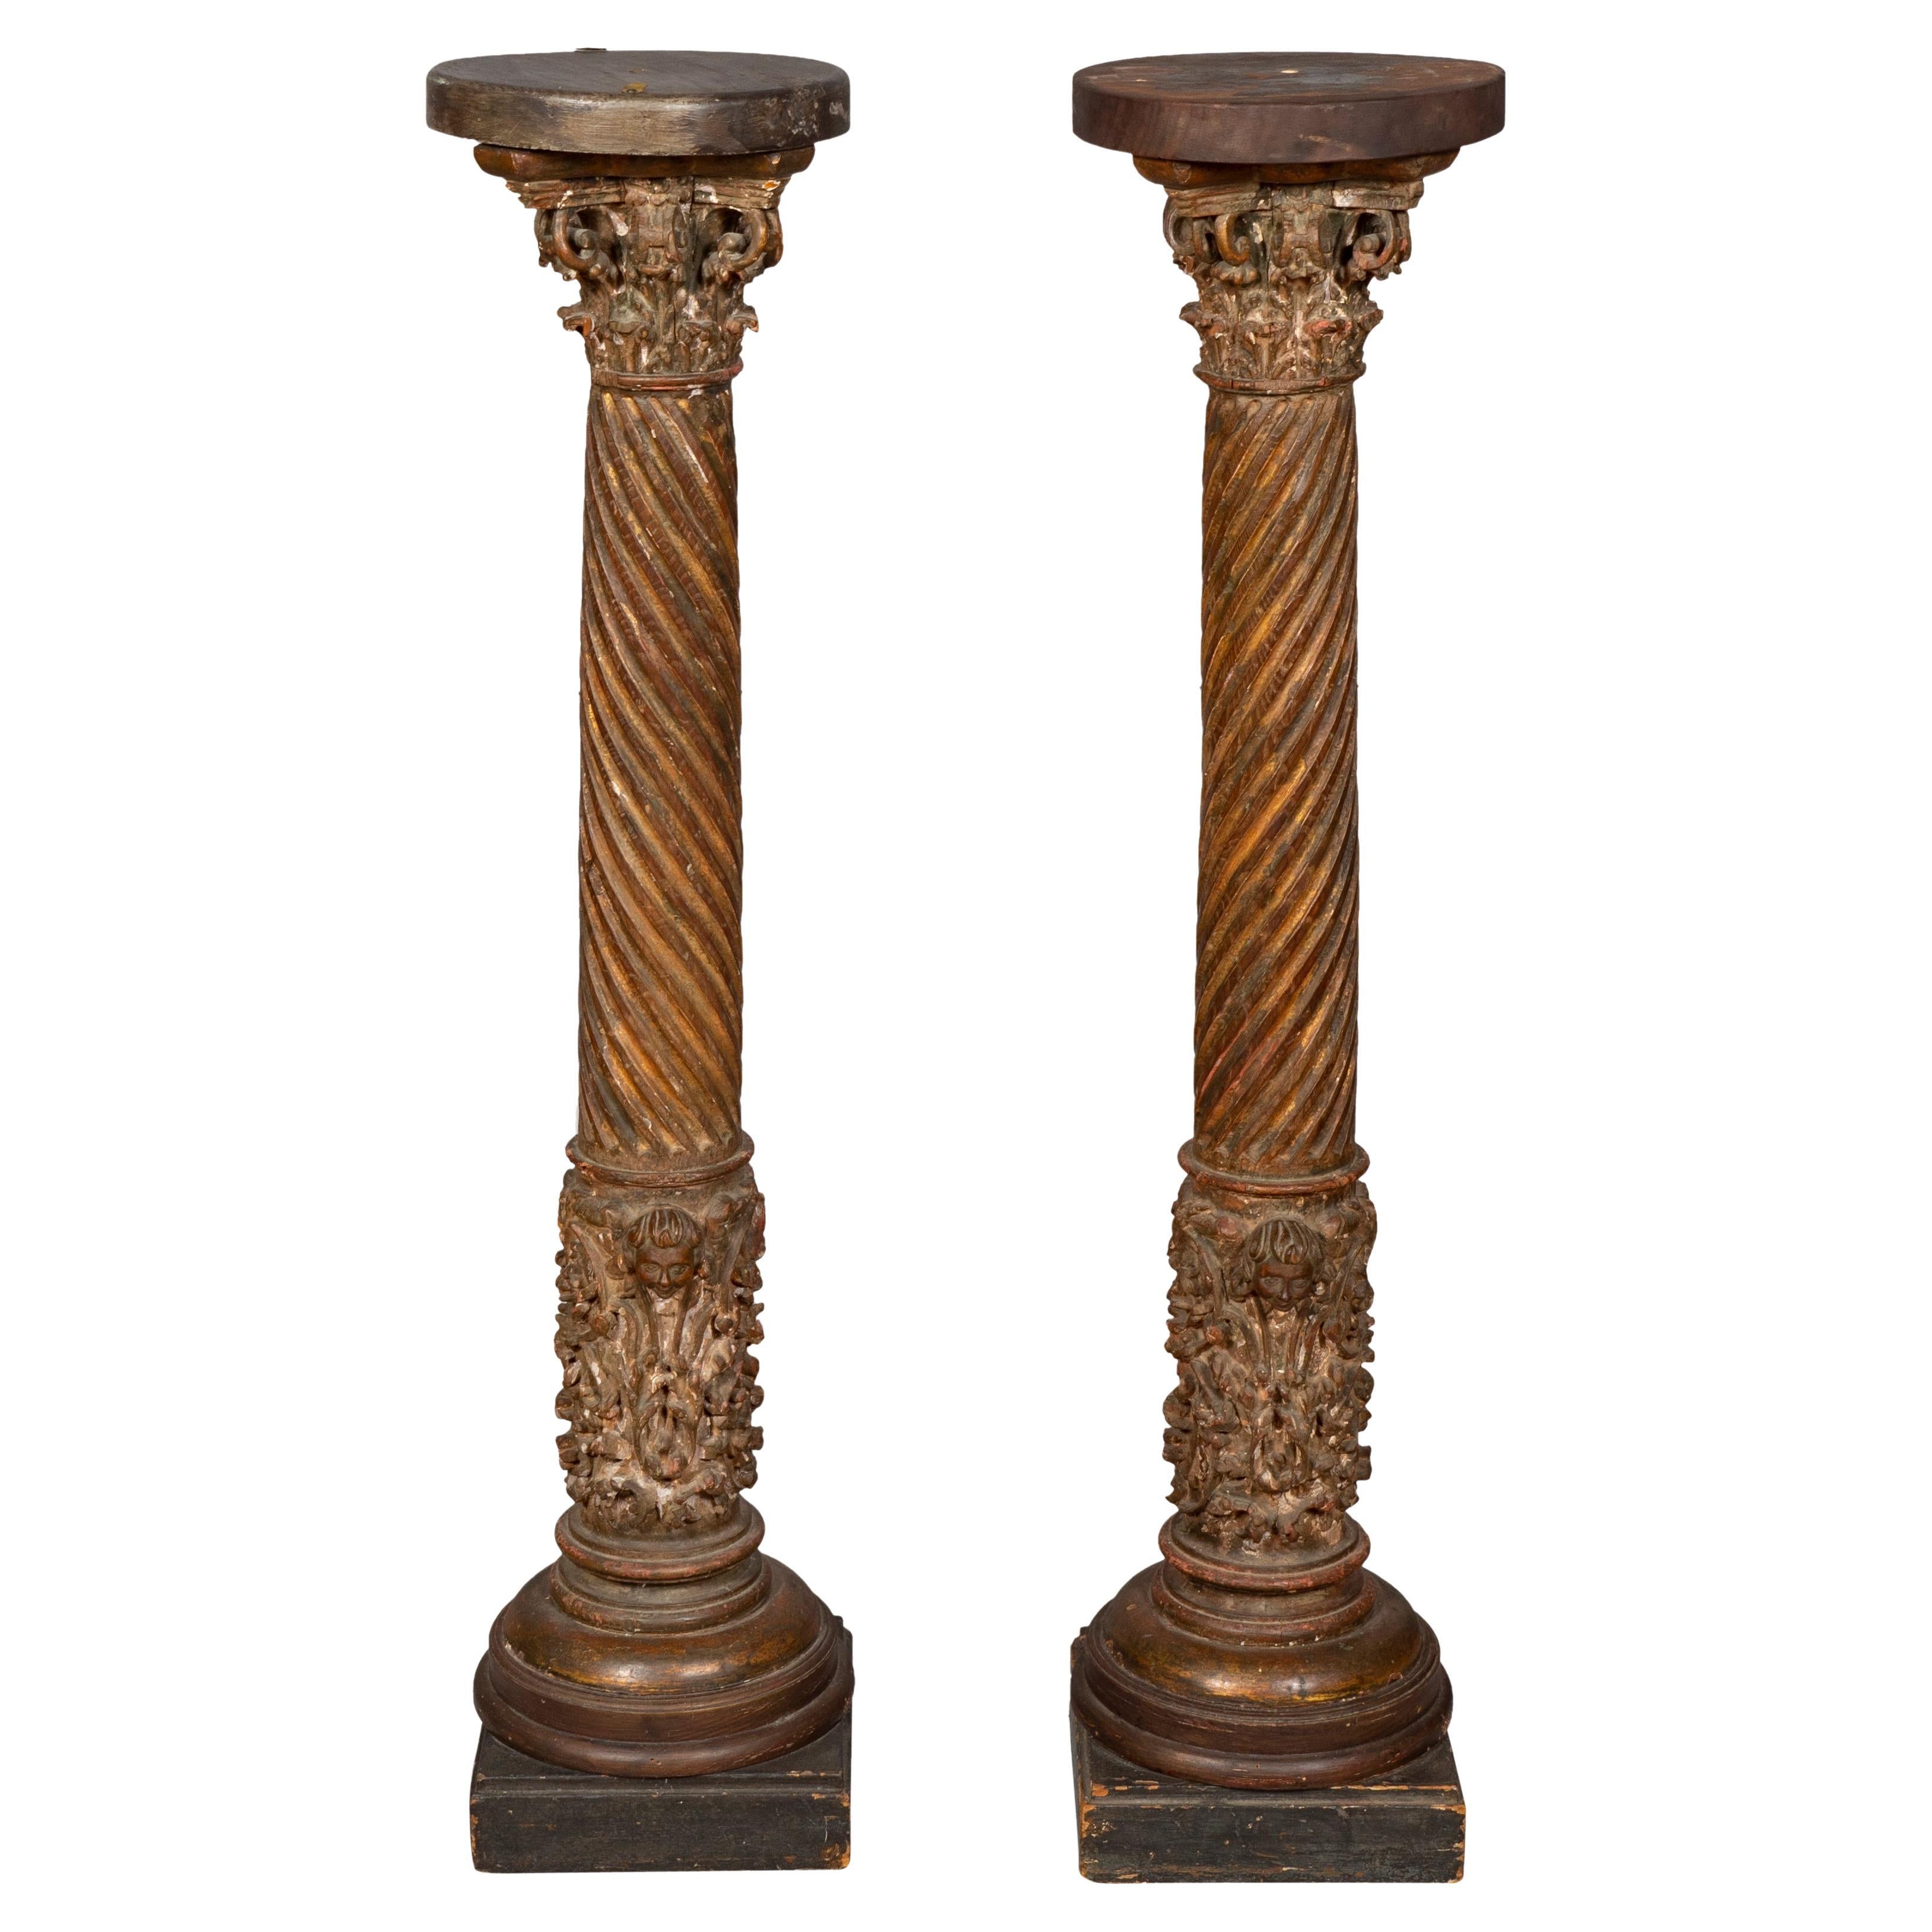 Paire de colonnes baroques italiennes sculptées, peintes et dorées